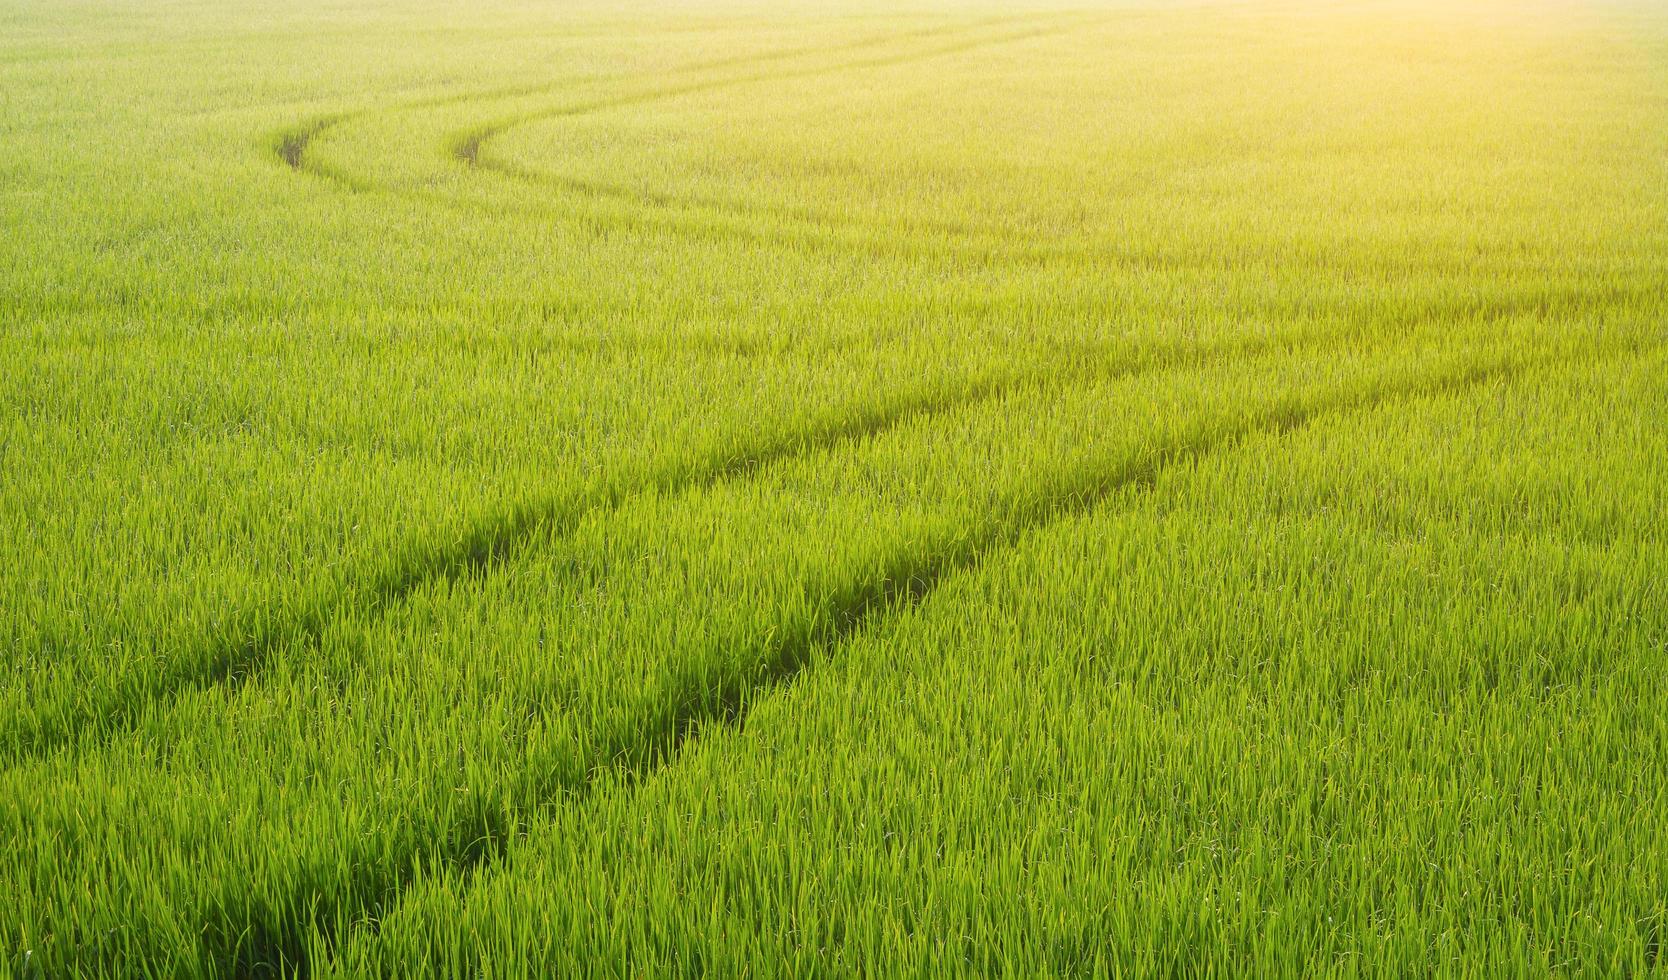 luz solar suave da manhã na superfície da linha de pista curva do trator de pulverização após a pulverização de fertilizante no arrozal verde, agricultura e fundo natural foto